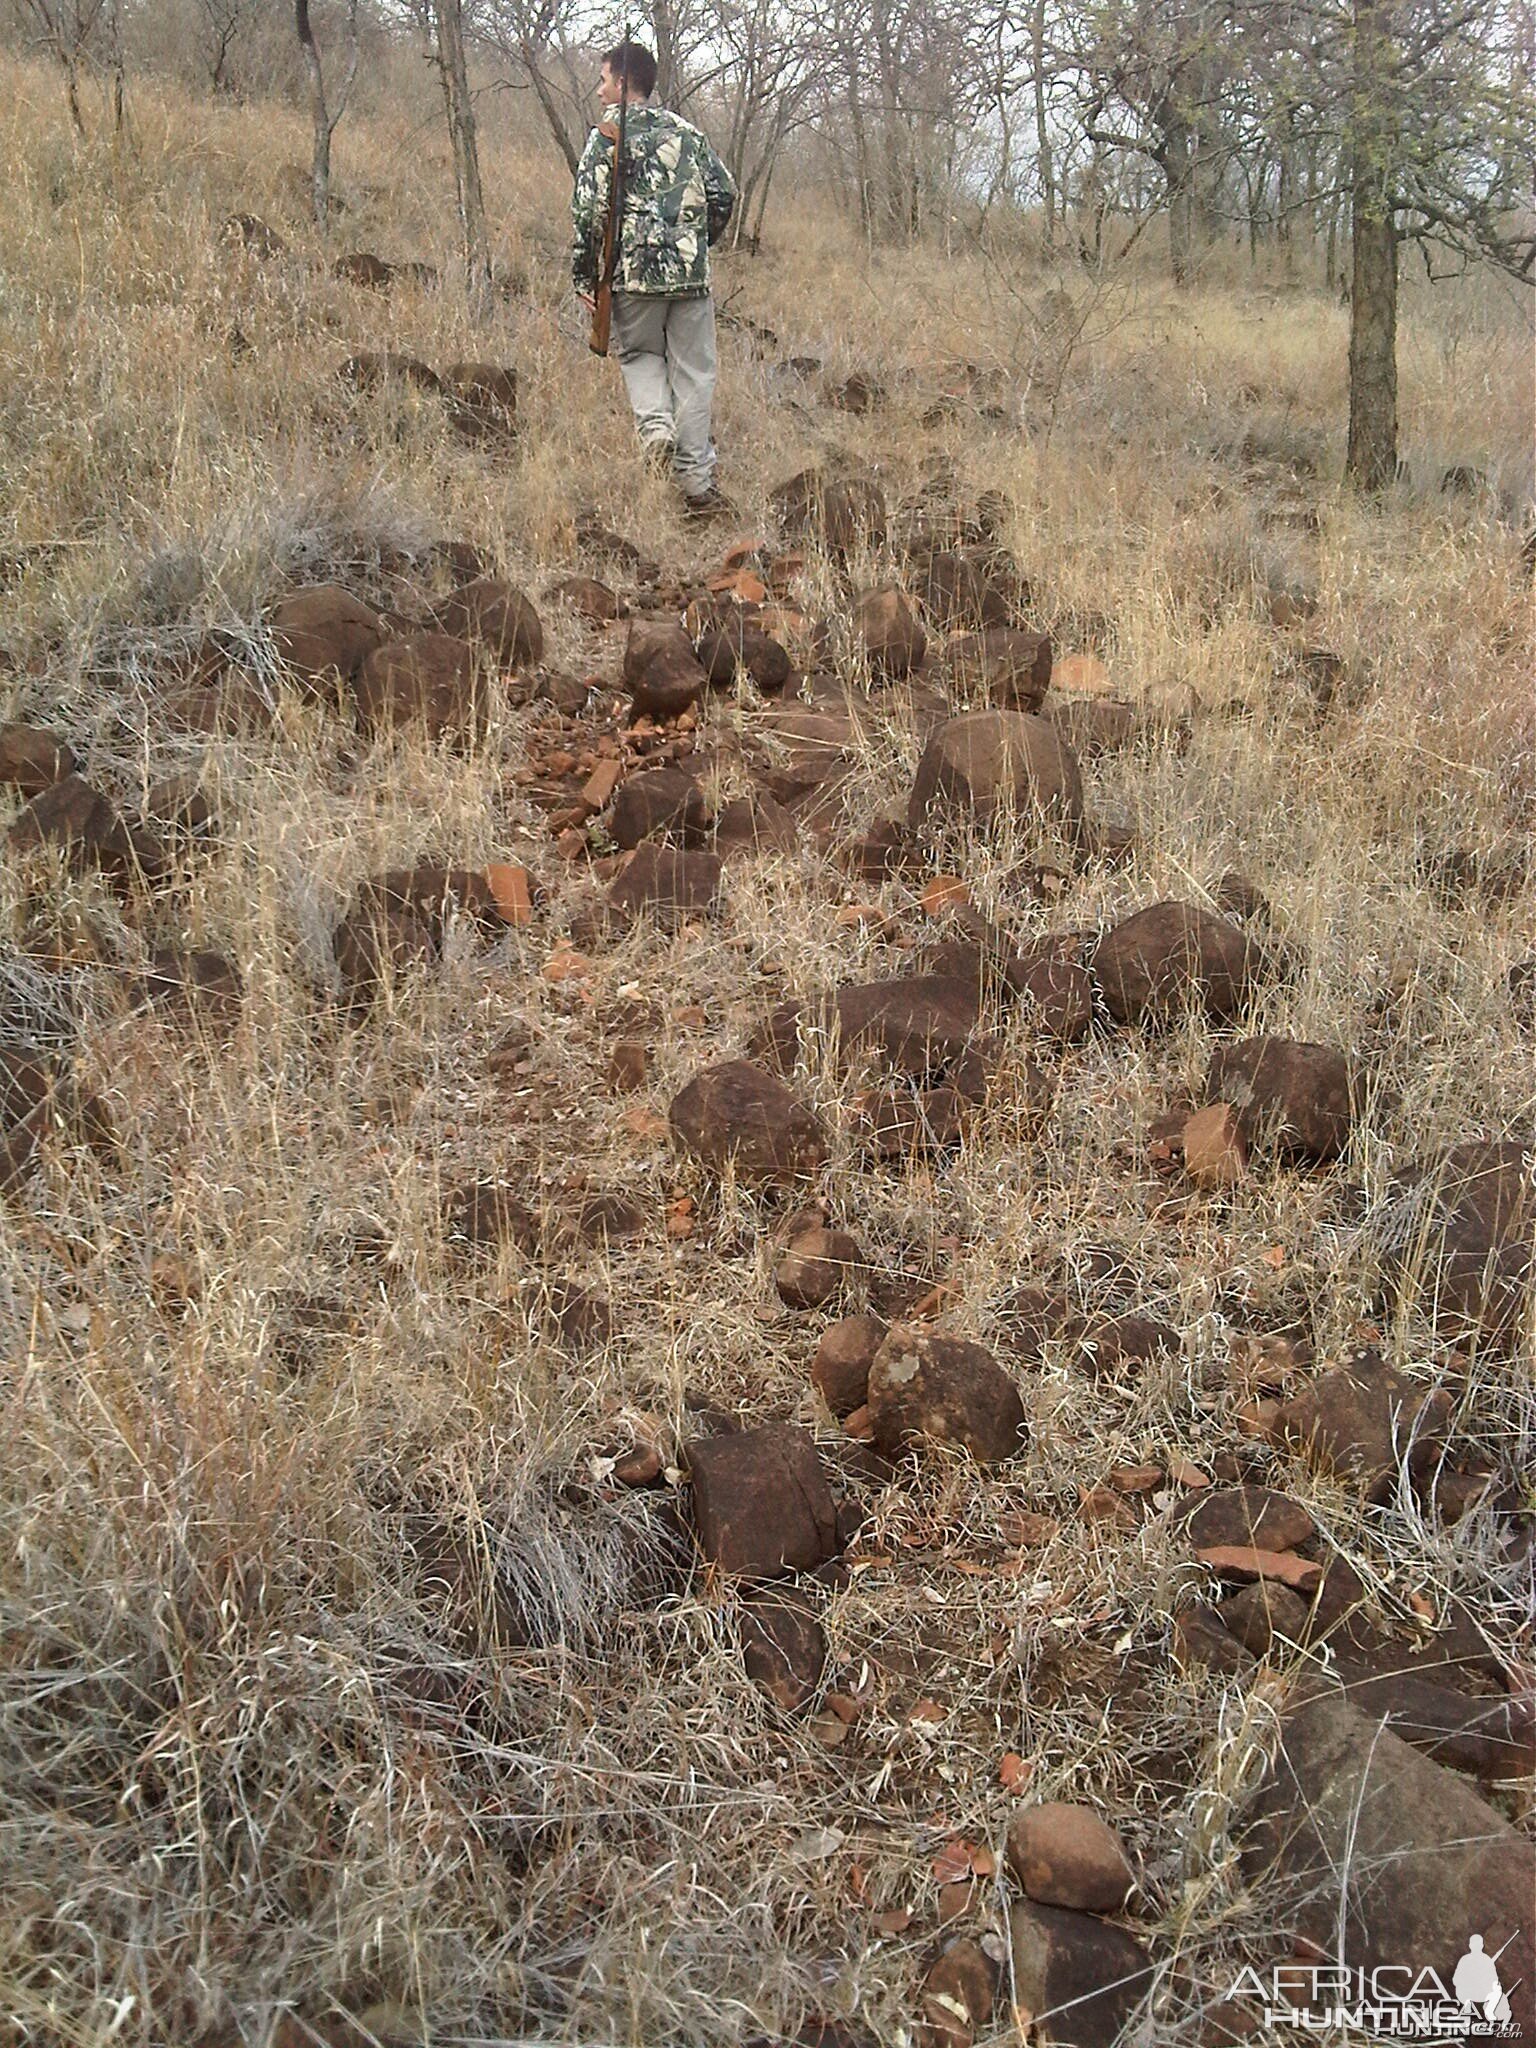 Kudu Mtn. Rocks - Pathway